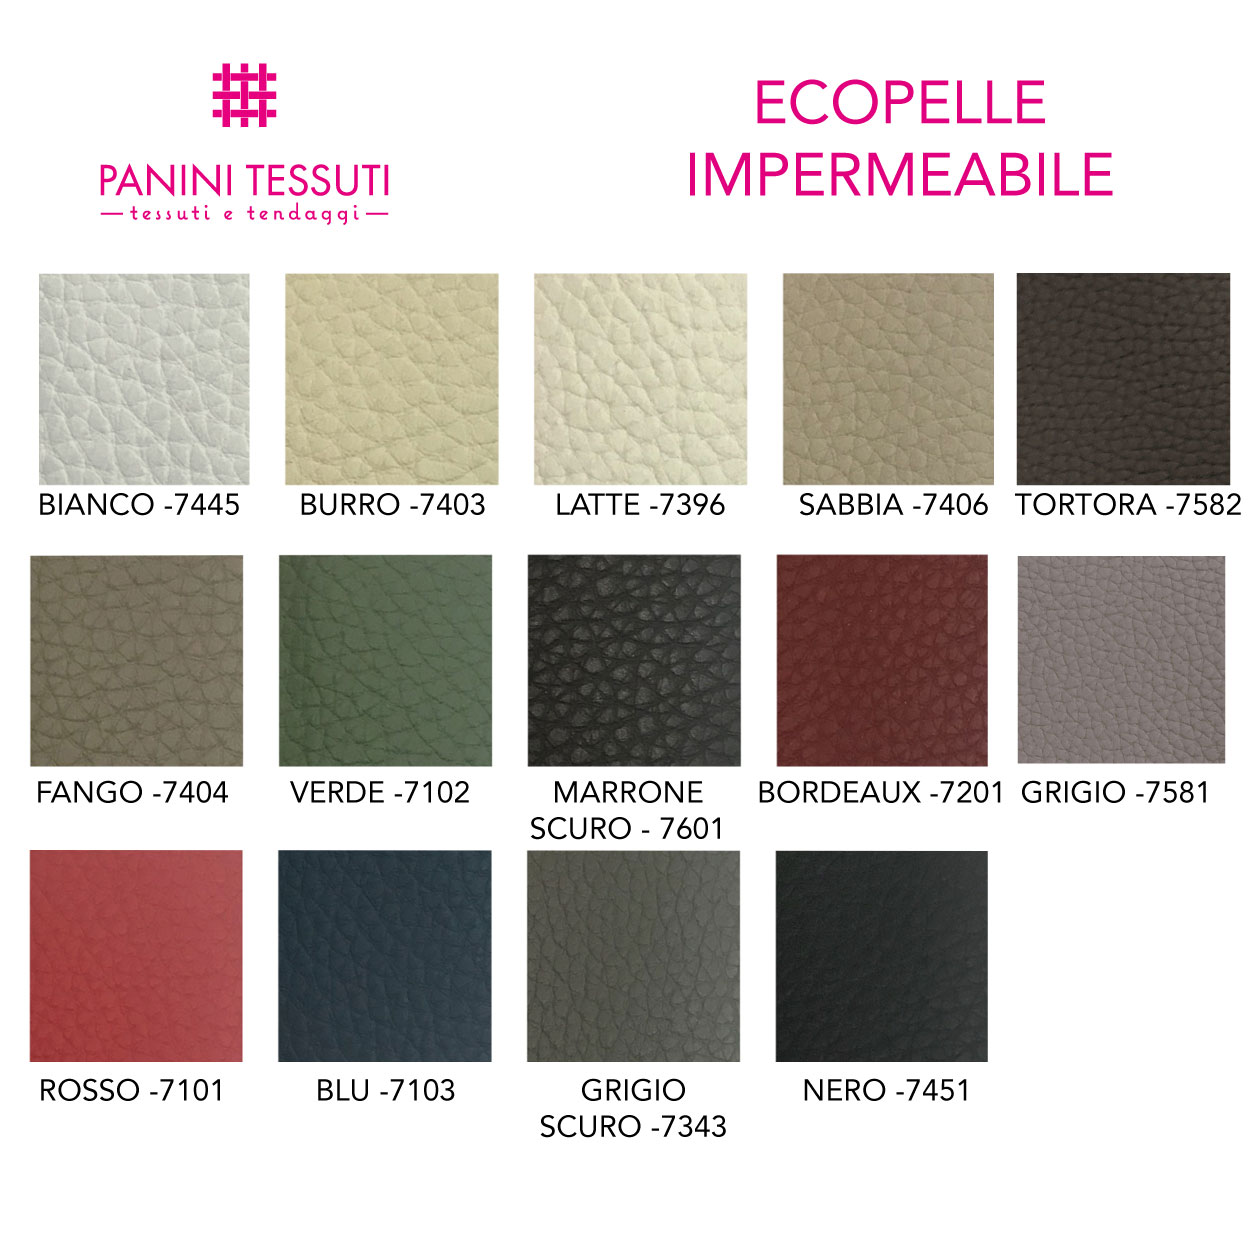 Ecopelle impermeabile cartella colore shopware (5)